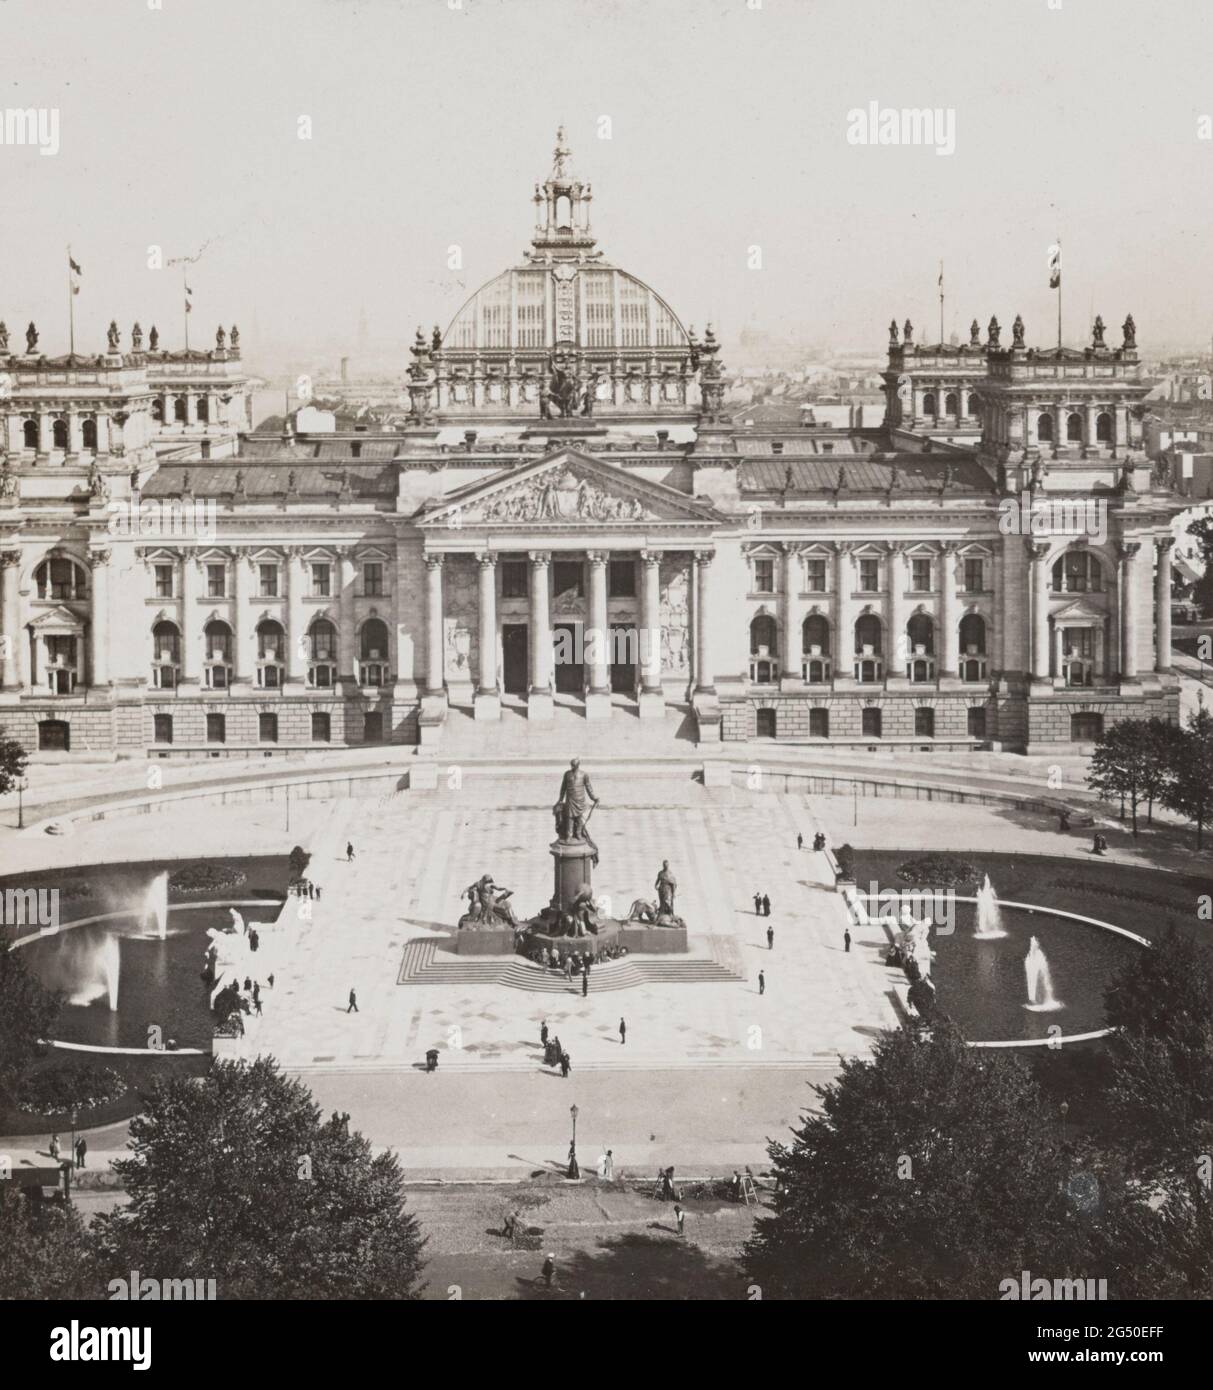 Photo d'époque du vieux Berlin. Le nouveau bâtiment Reichstag. Salle de la Diète impériale (terminée en 1894). Berlin, Allemagne. 1902 Banque D'Images